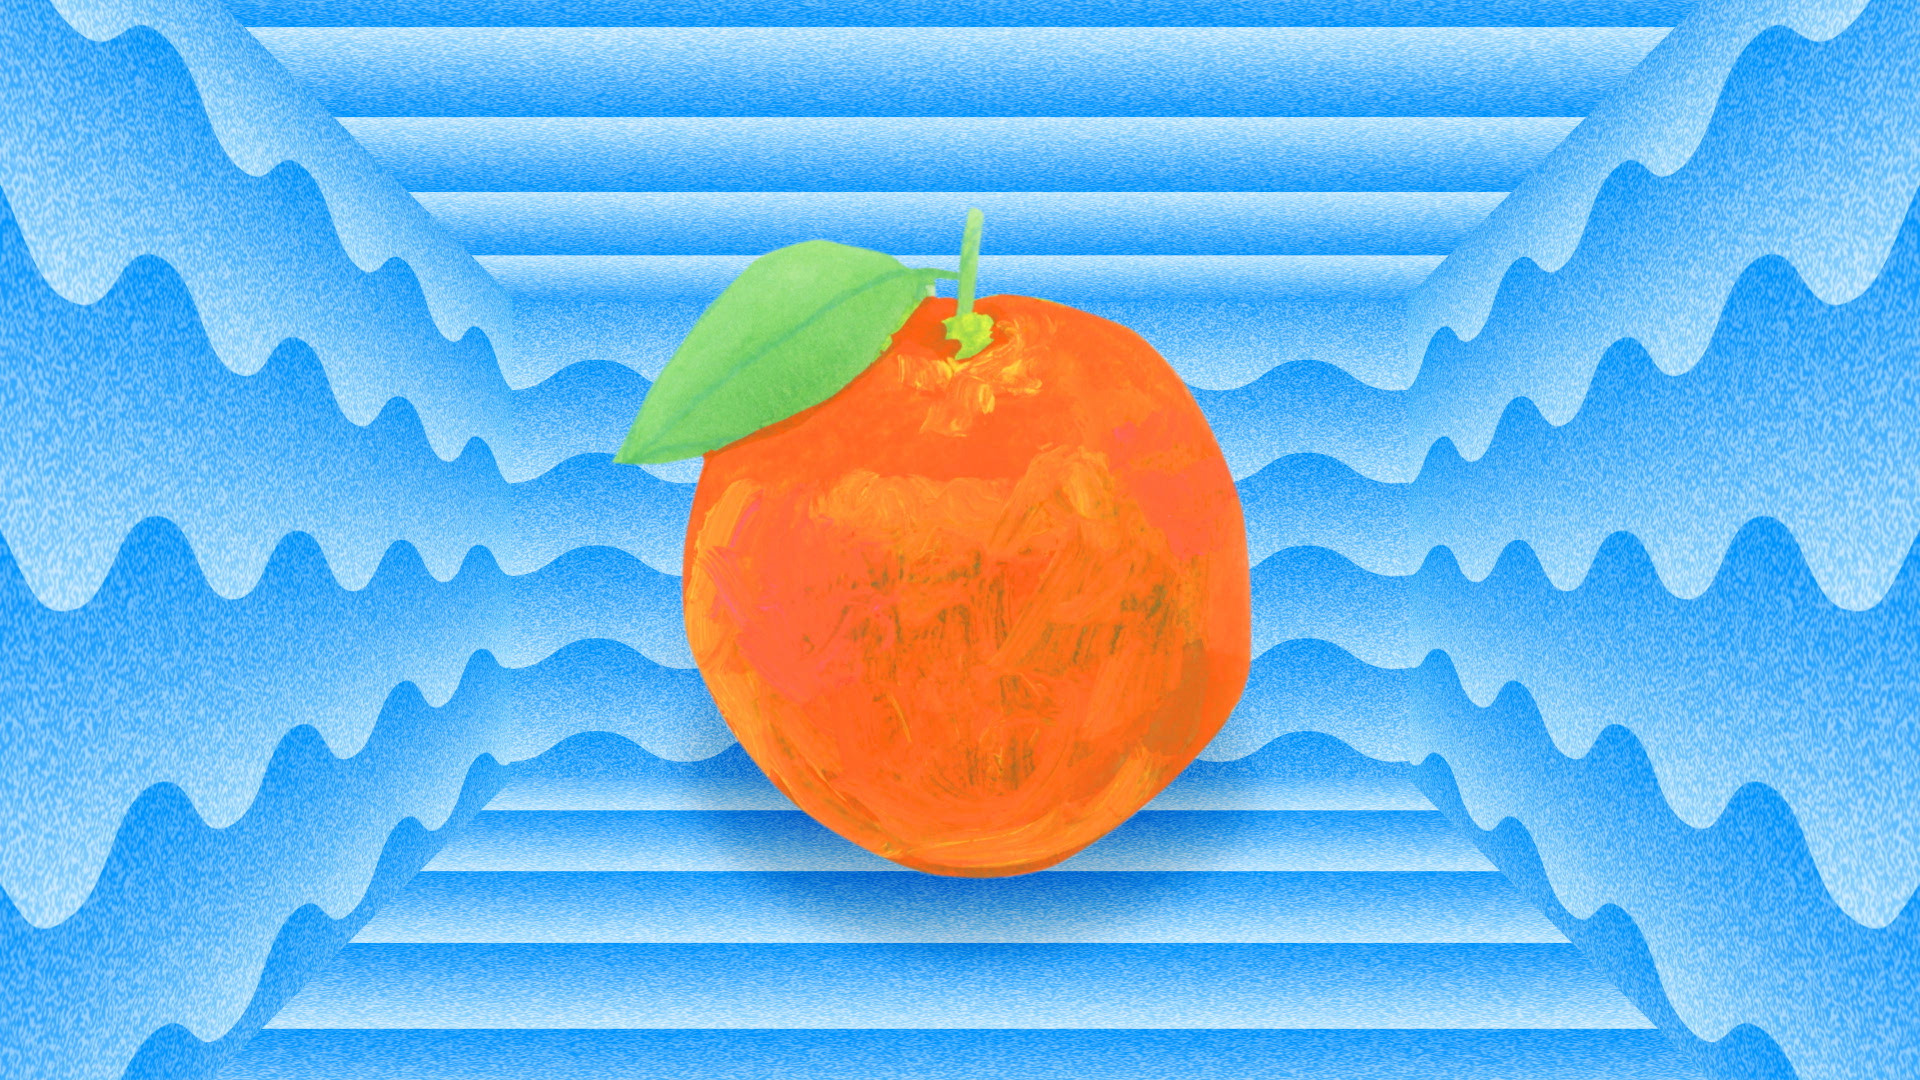 NHKみんなのうた「オレンジマーチ 」のアニメーションを制作しました